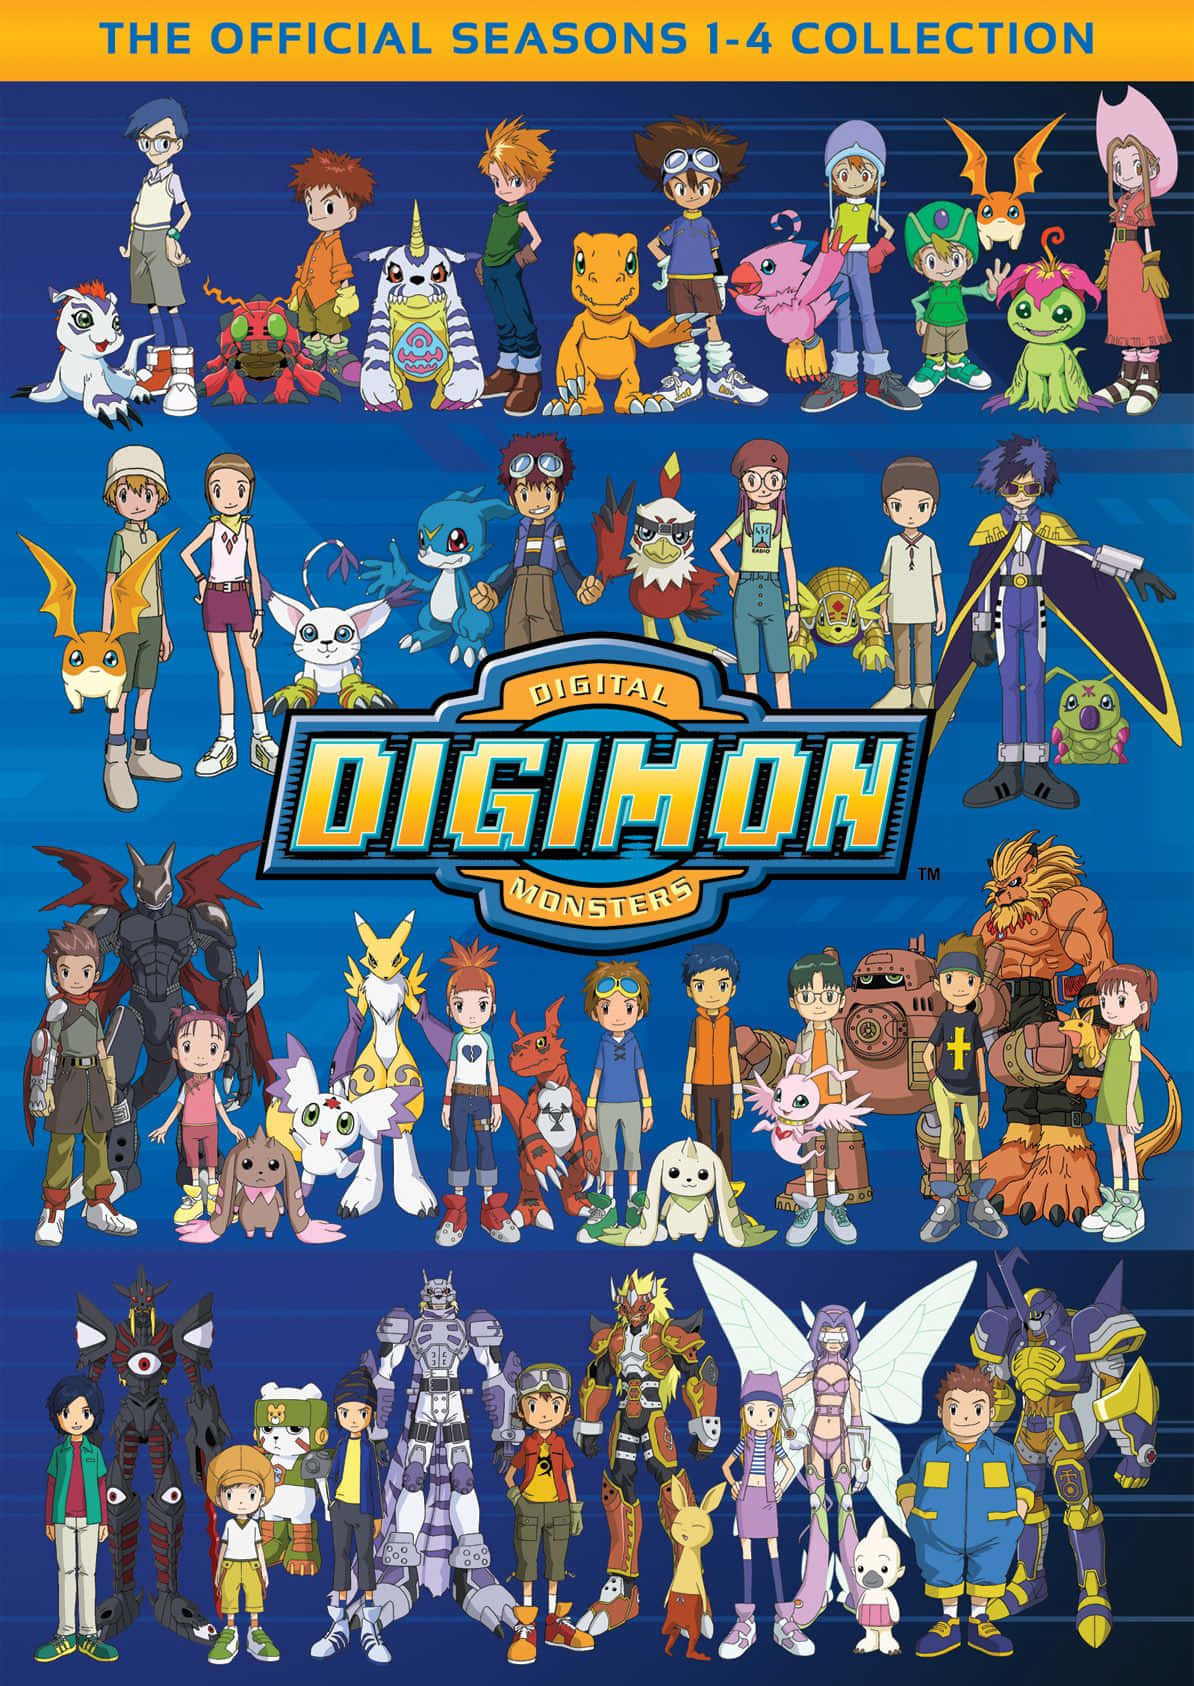 Imagende La Colección De Digimon De Las Temporadas 1 A 4.